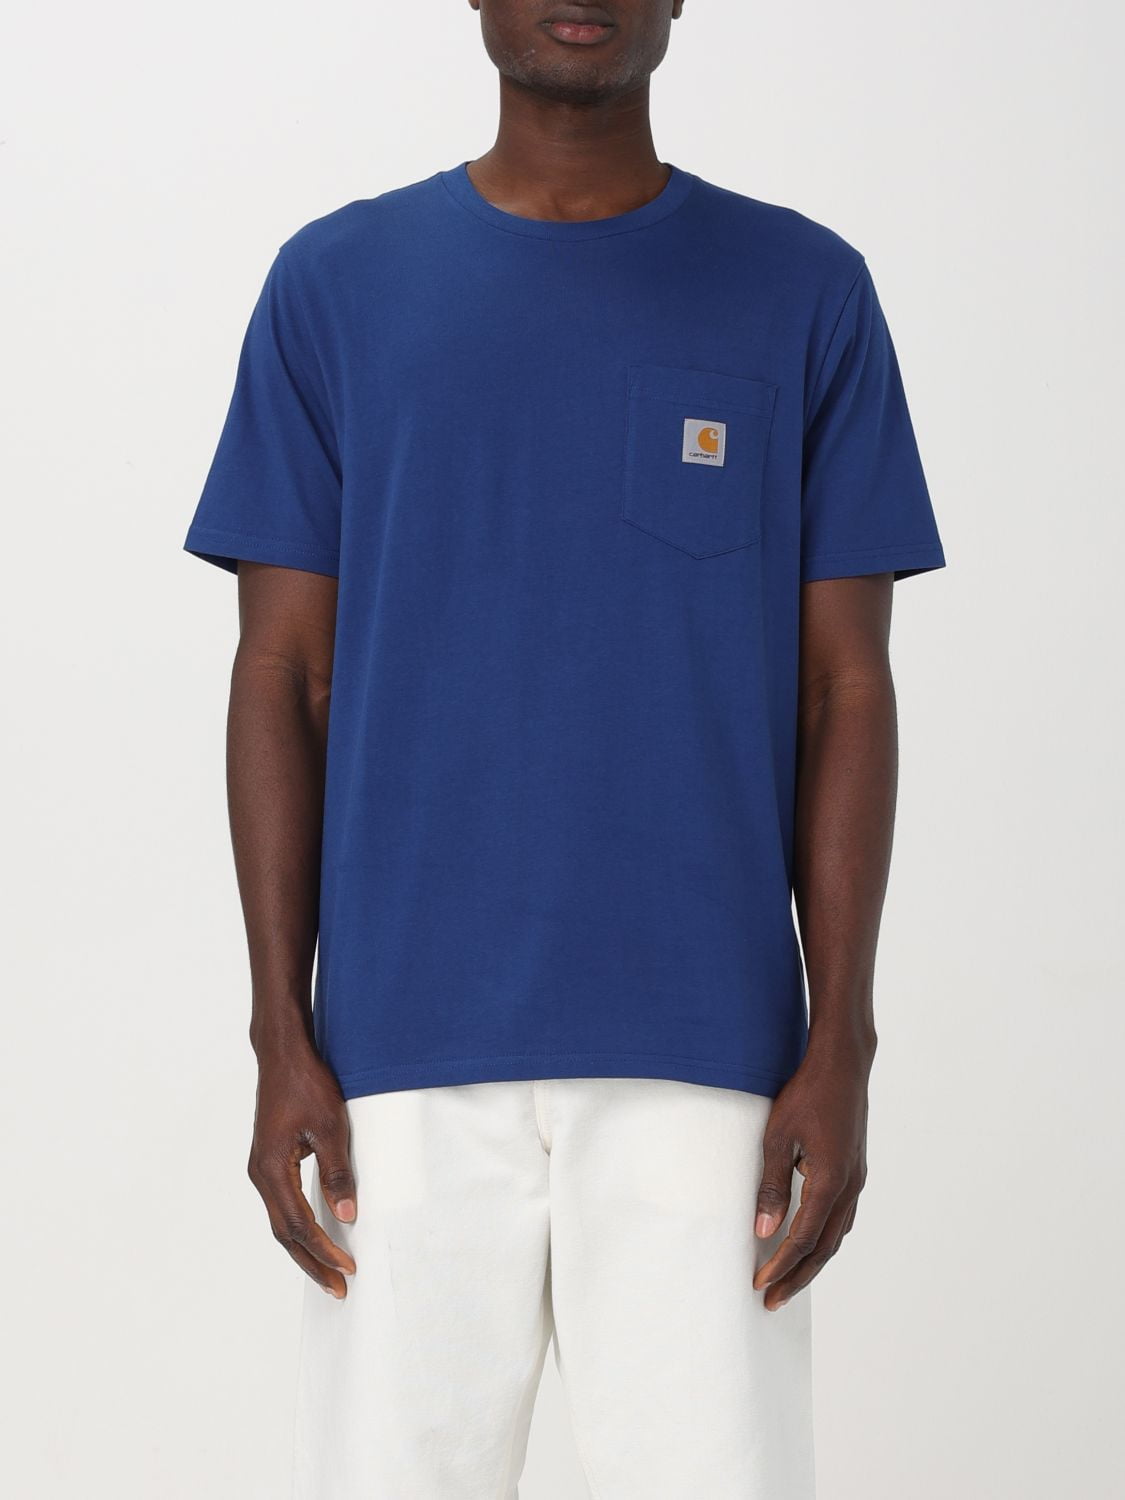 Carhartt Wip T-Shirt Men Blue Men - Walmart.com